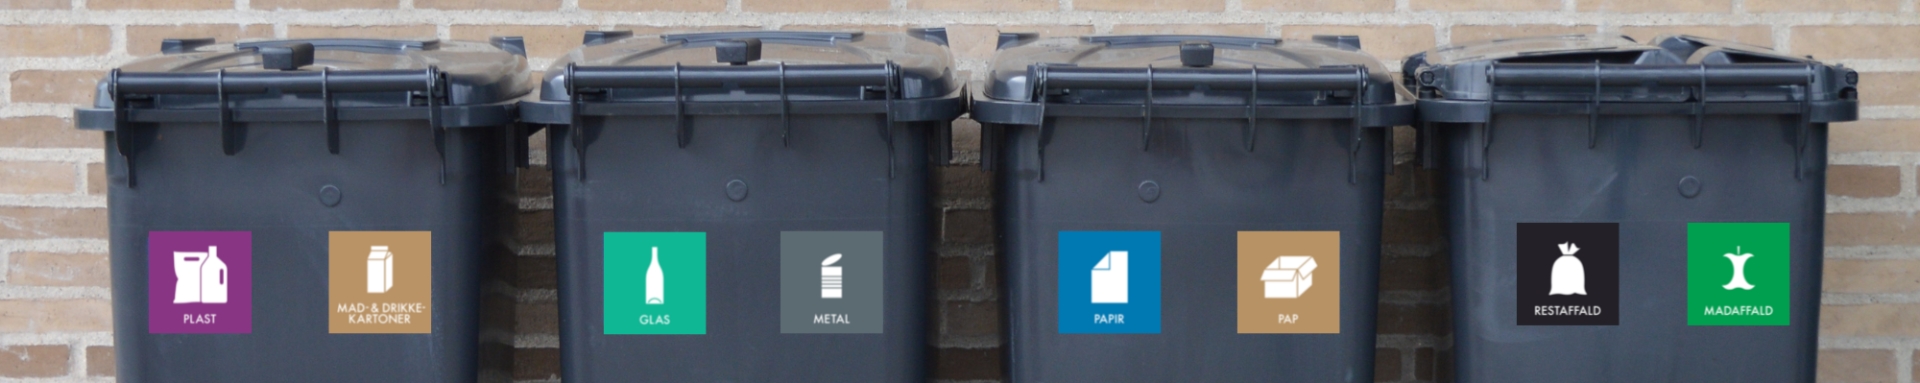 Fire sorte affaldsbeholdere på række med landsdækkende piktogrammer på